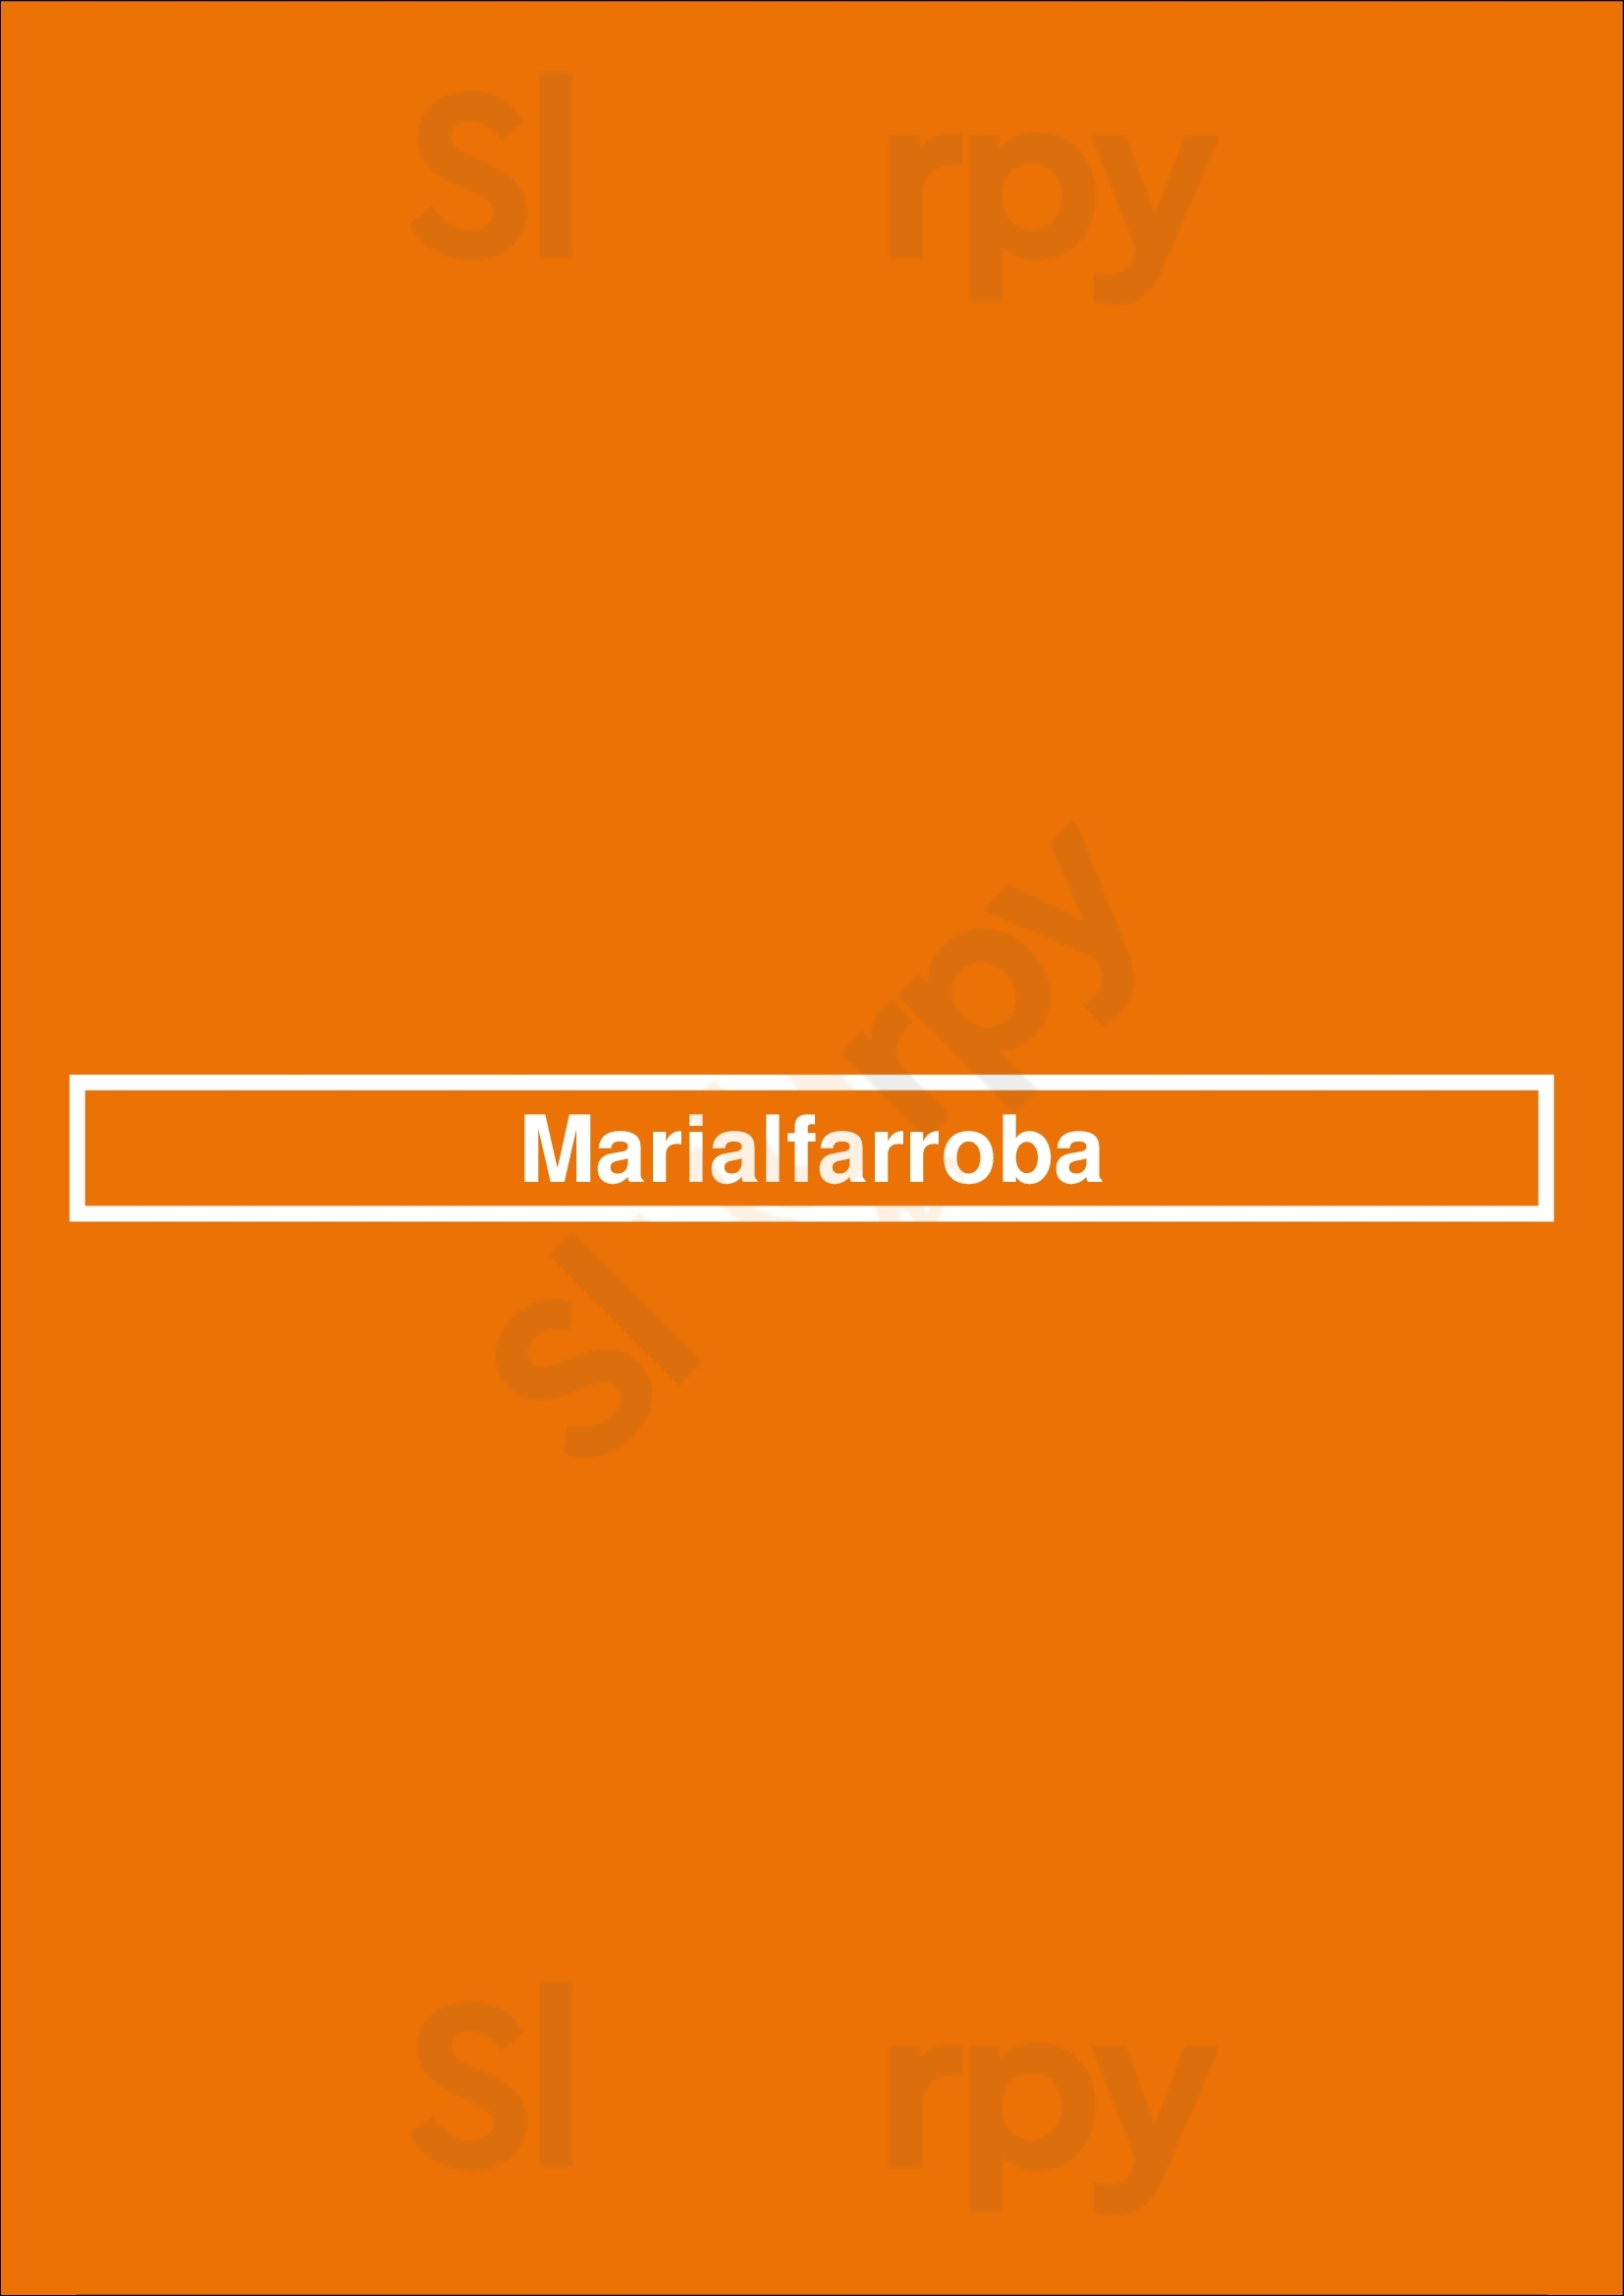 Marialfarroba Lisboa Menu - 1